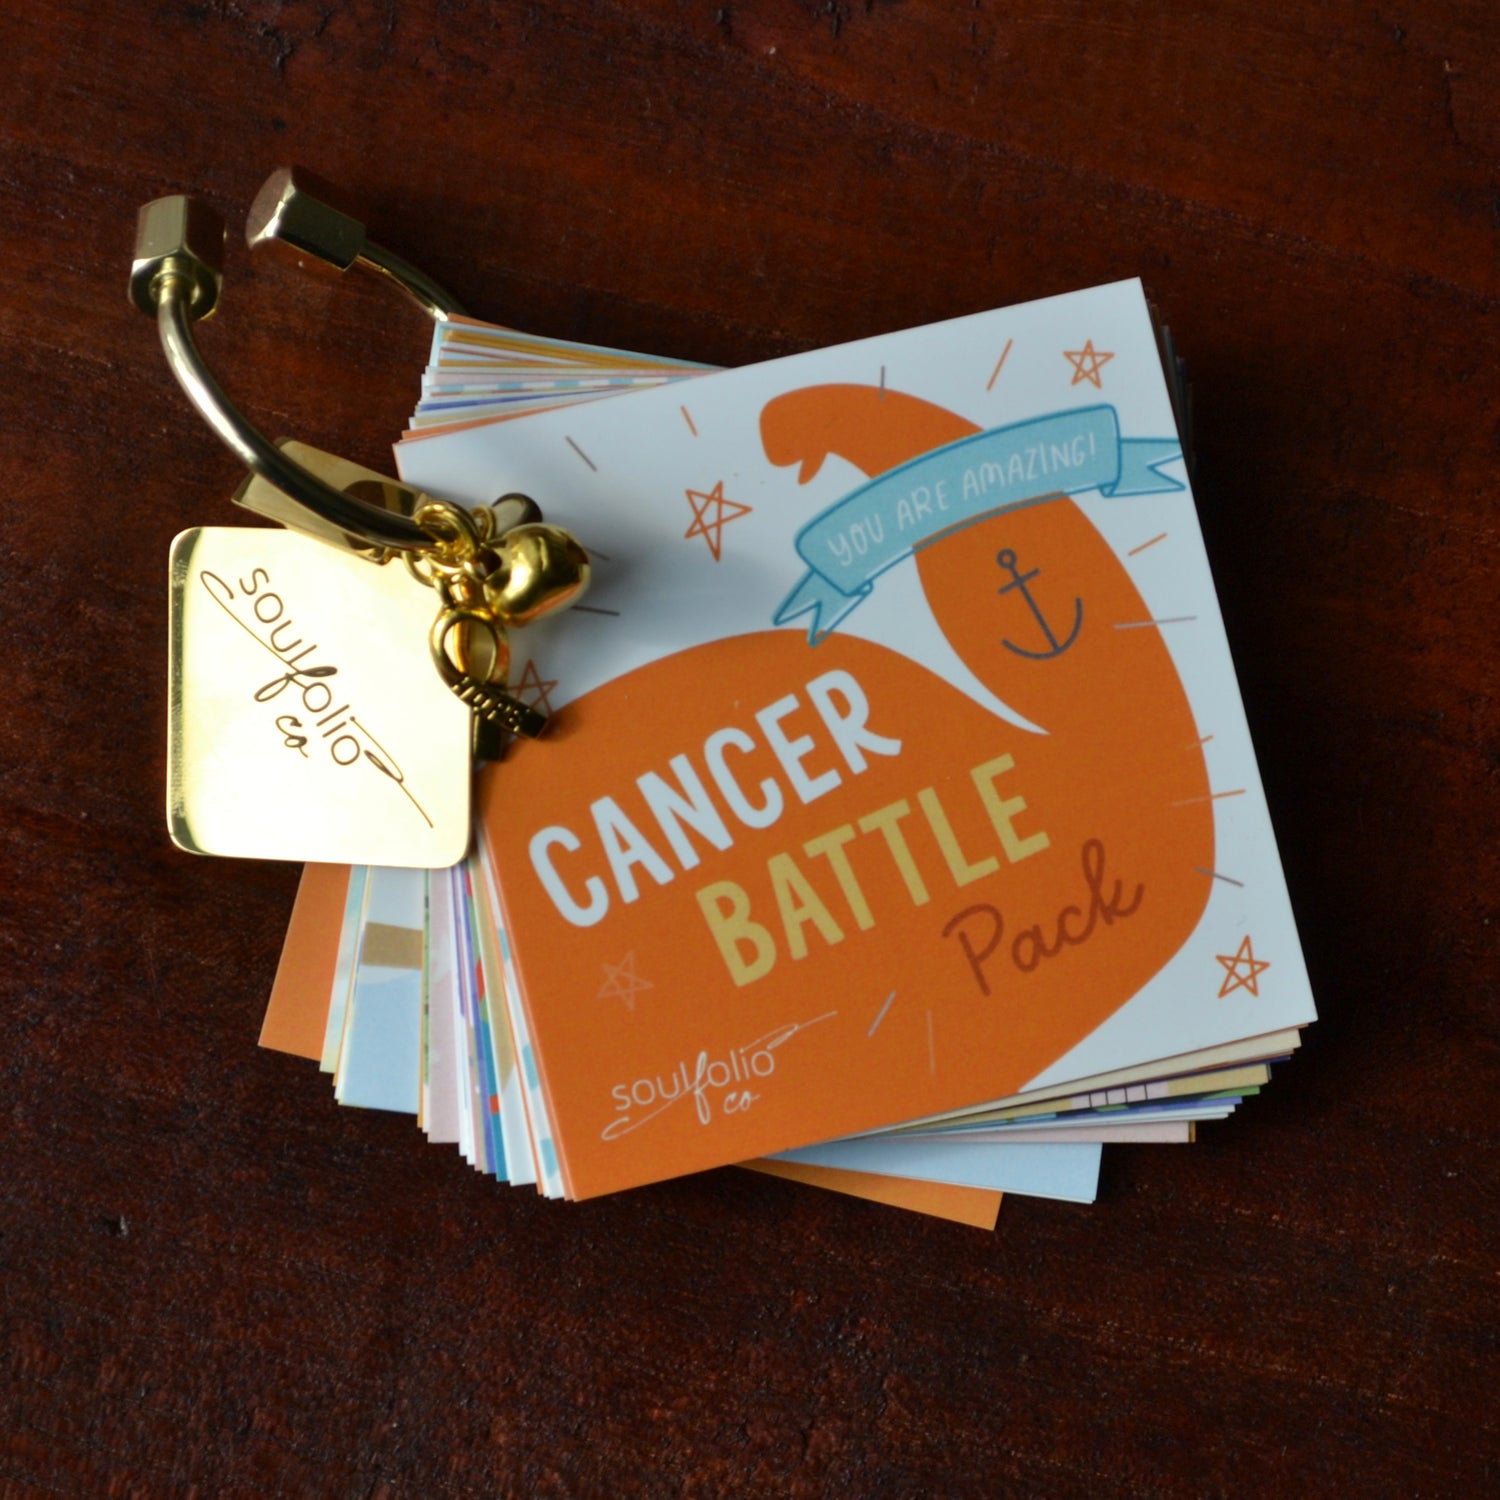 Cancer Battle Pack